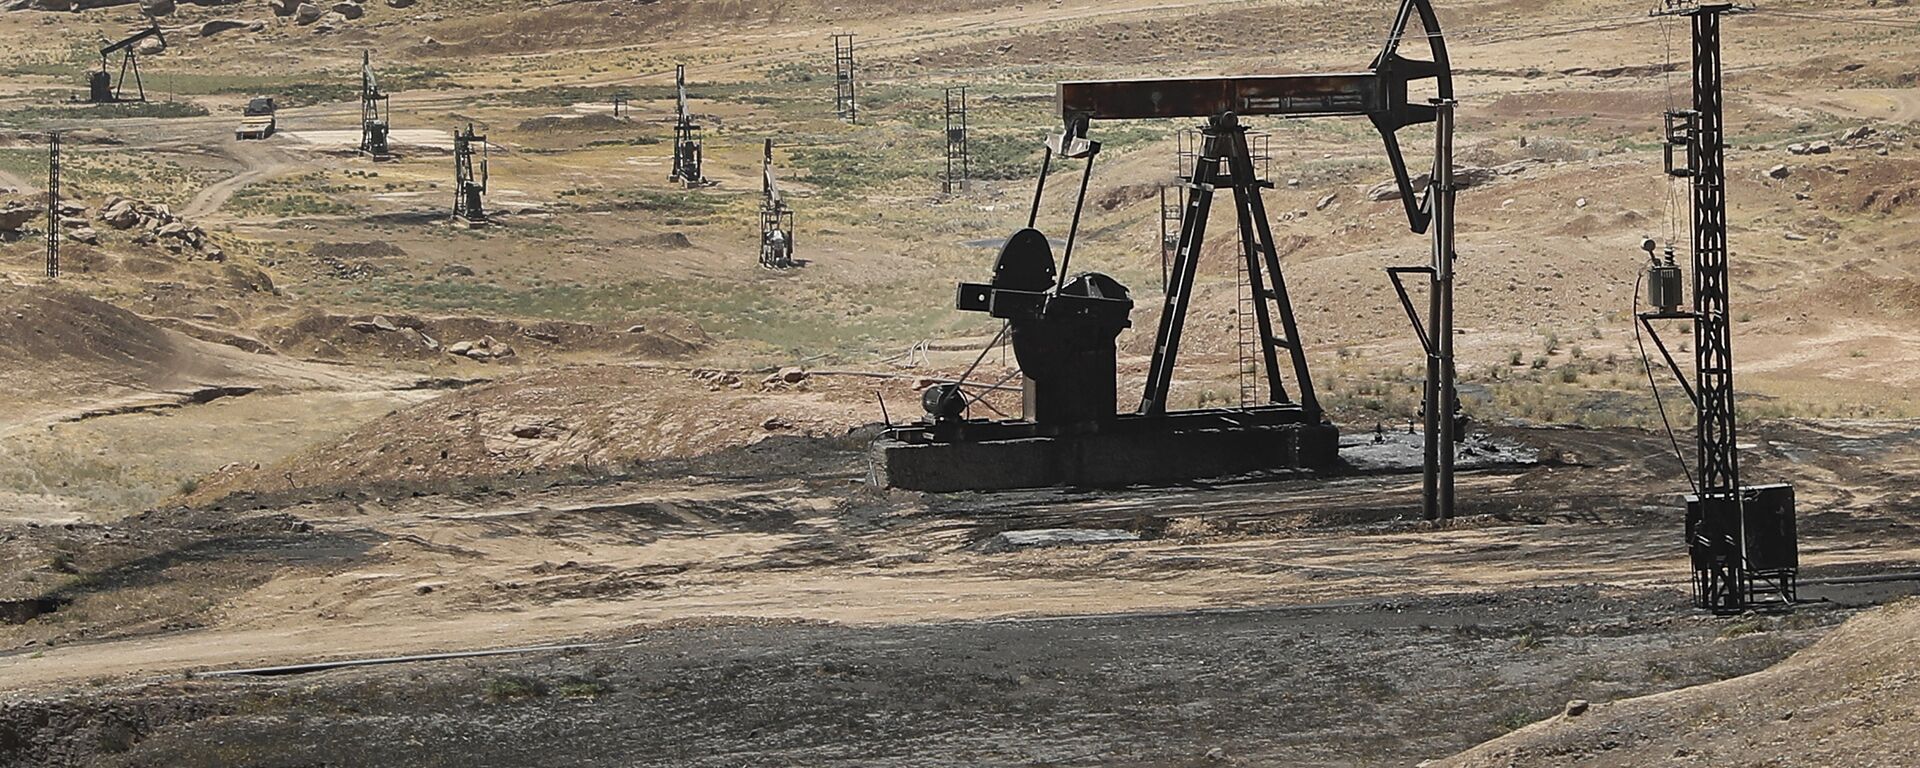 Нафта поља у сиријској провинцији Хасака - Sputnik Србија, 1920, 20.03.2021